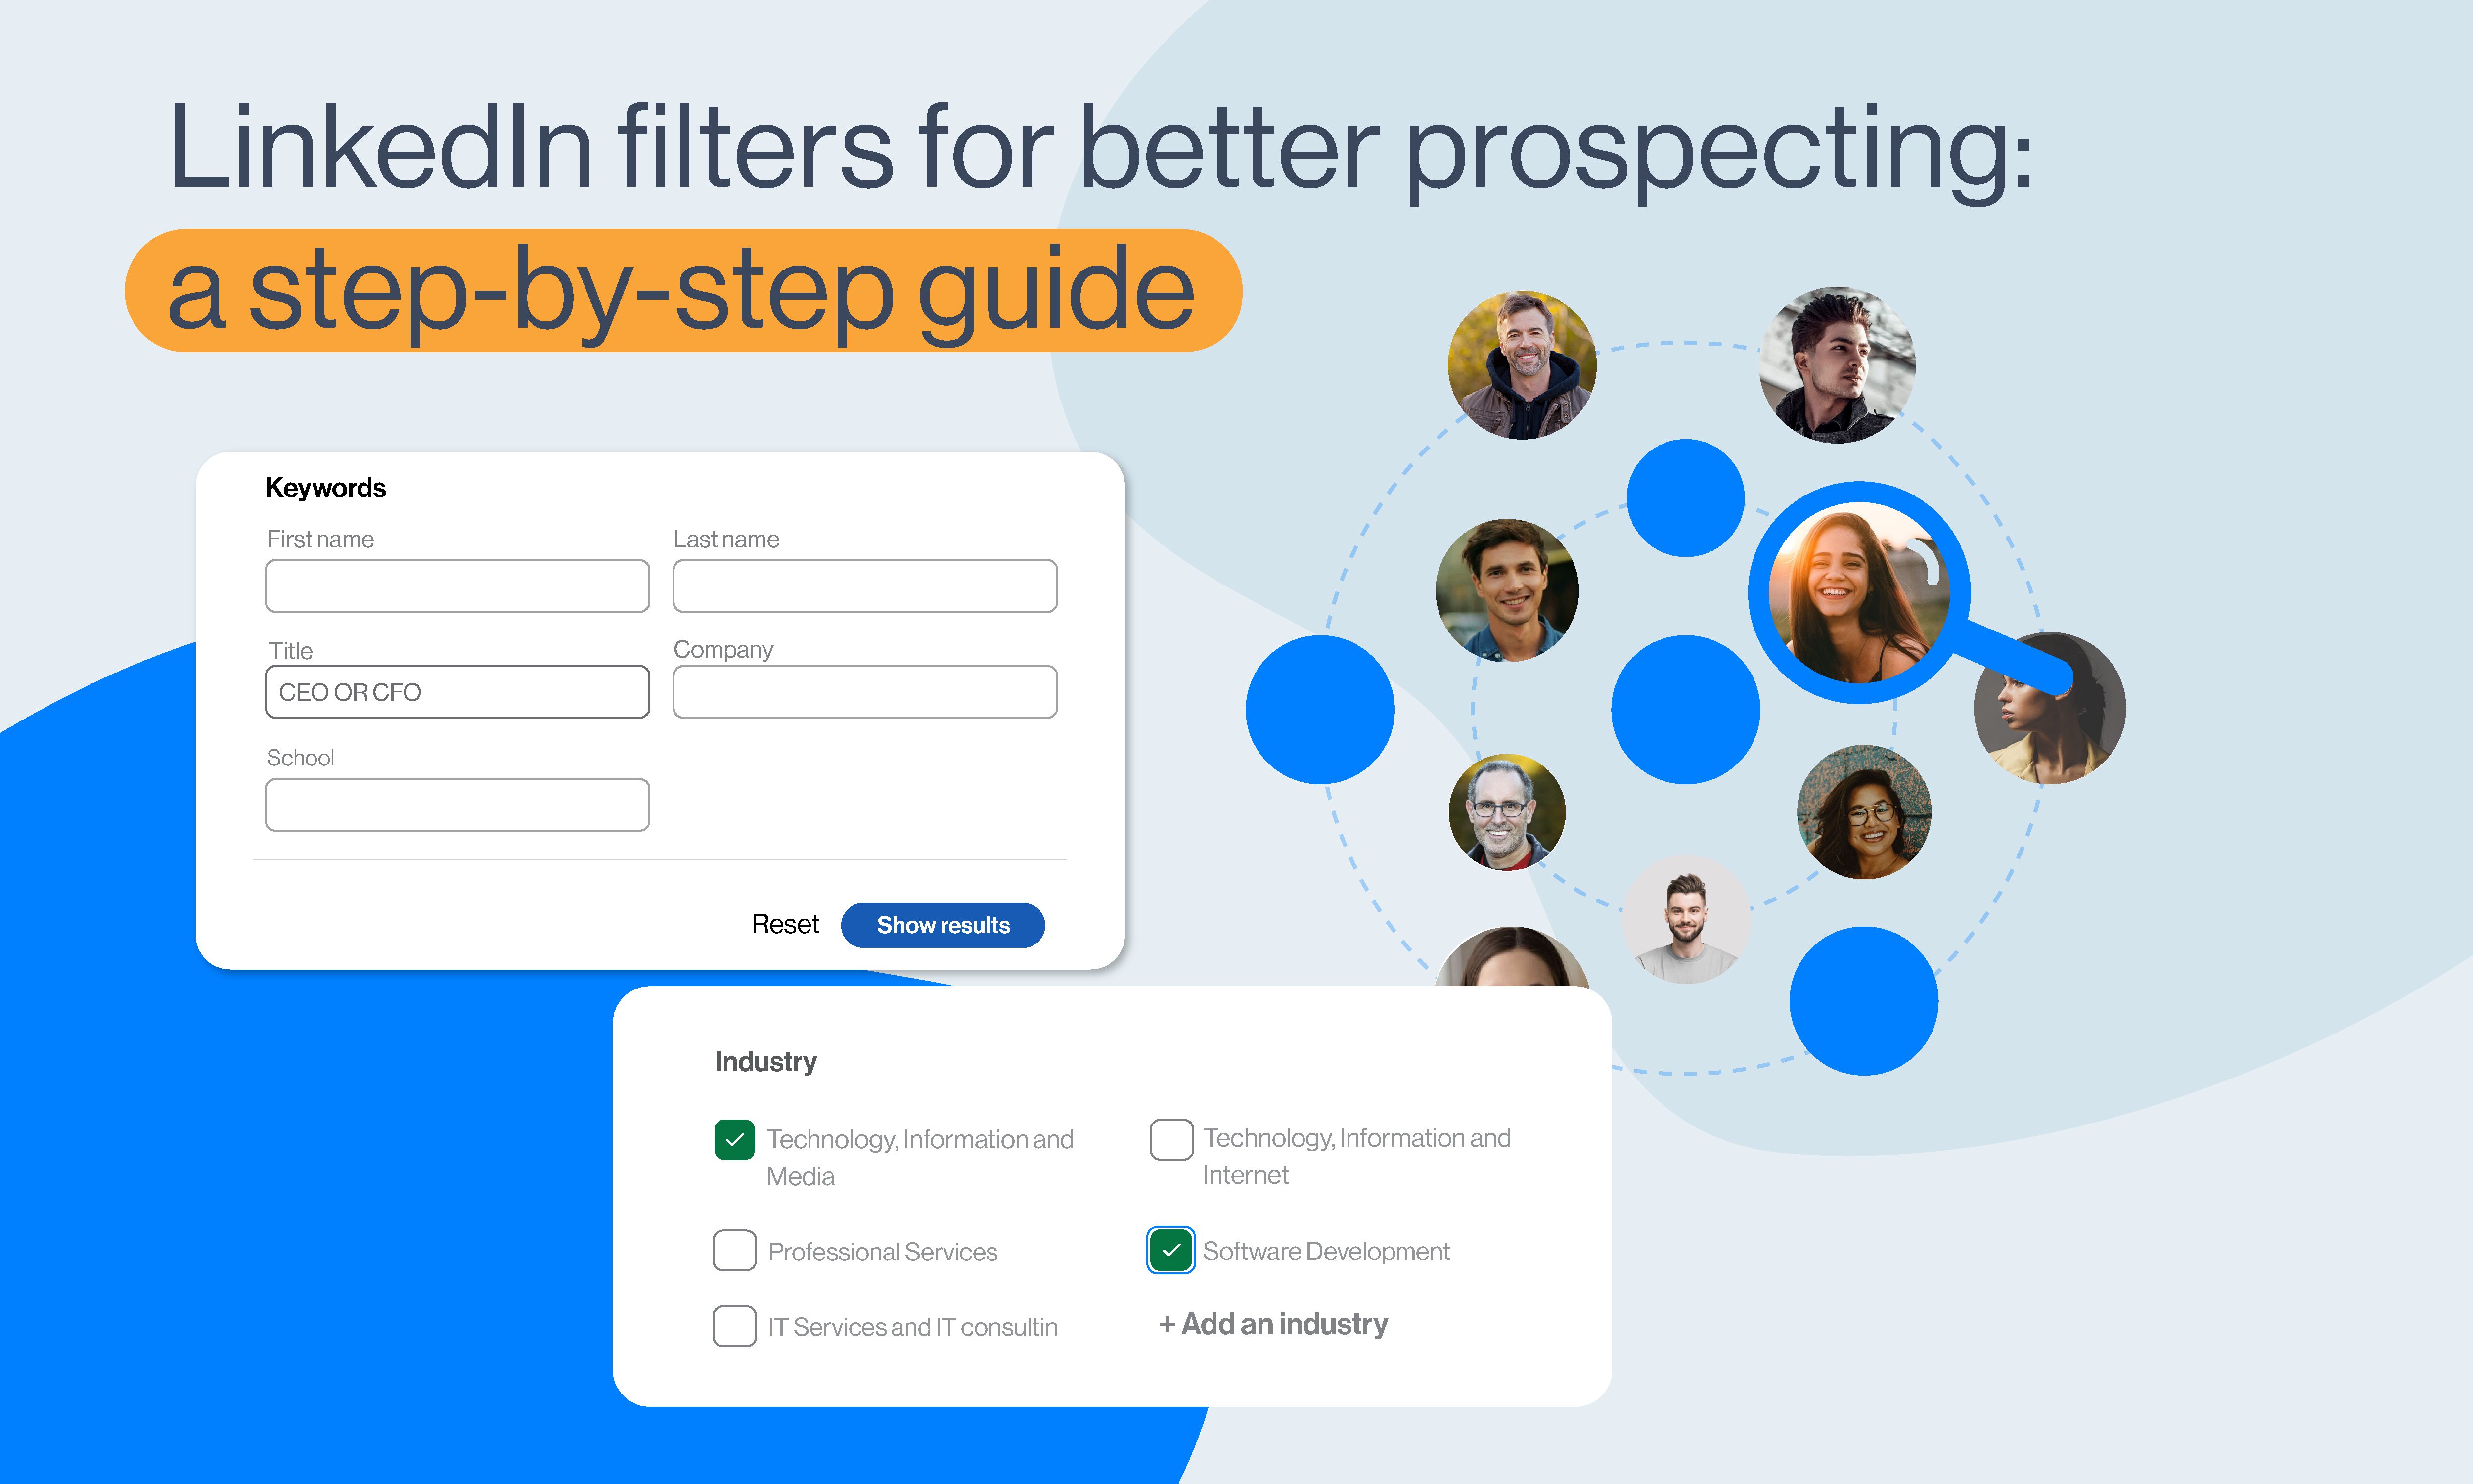 LinkedIn filters for better prospecting